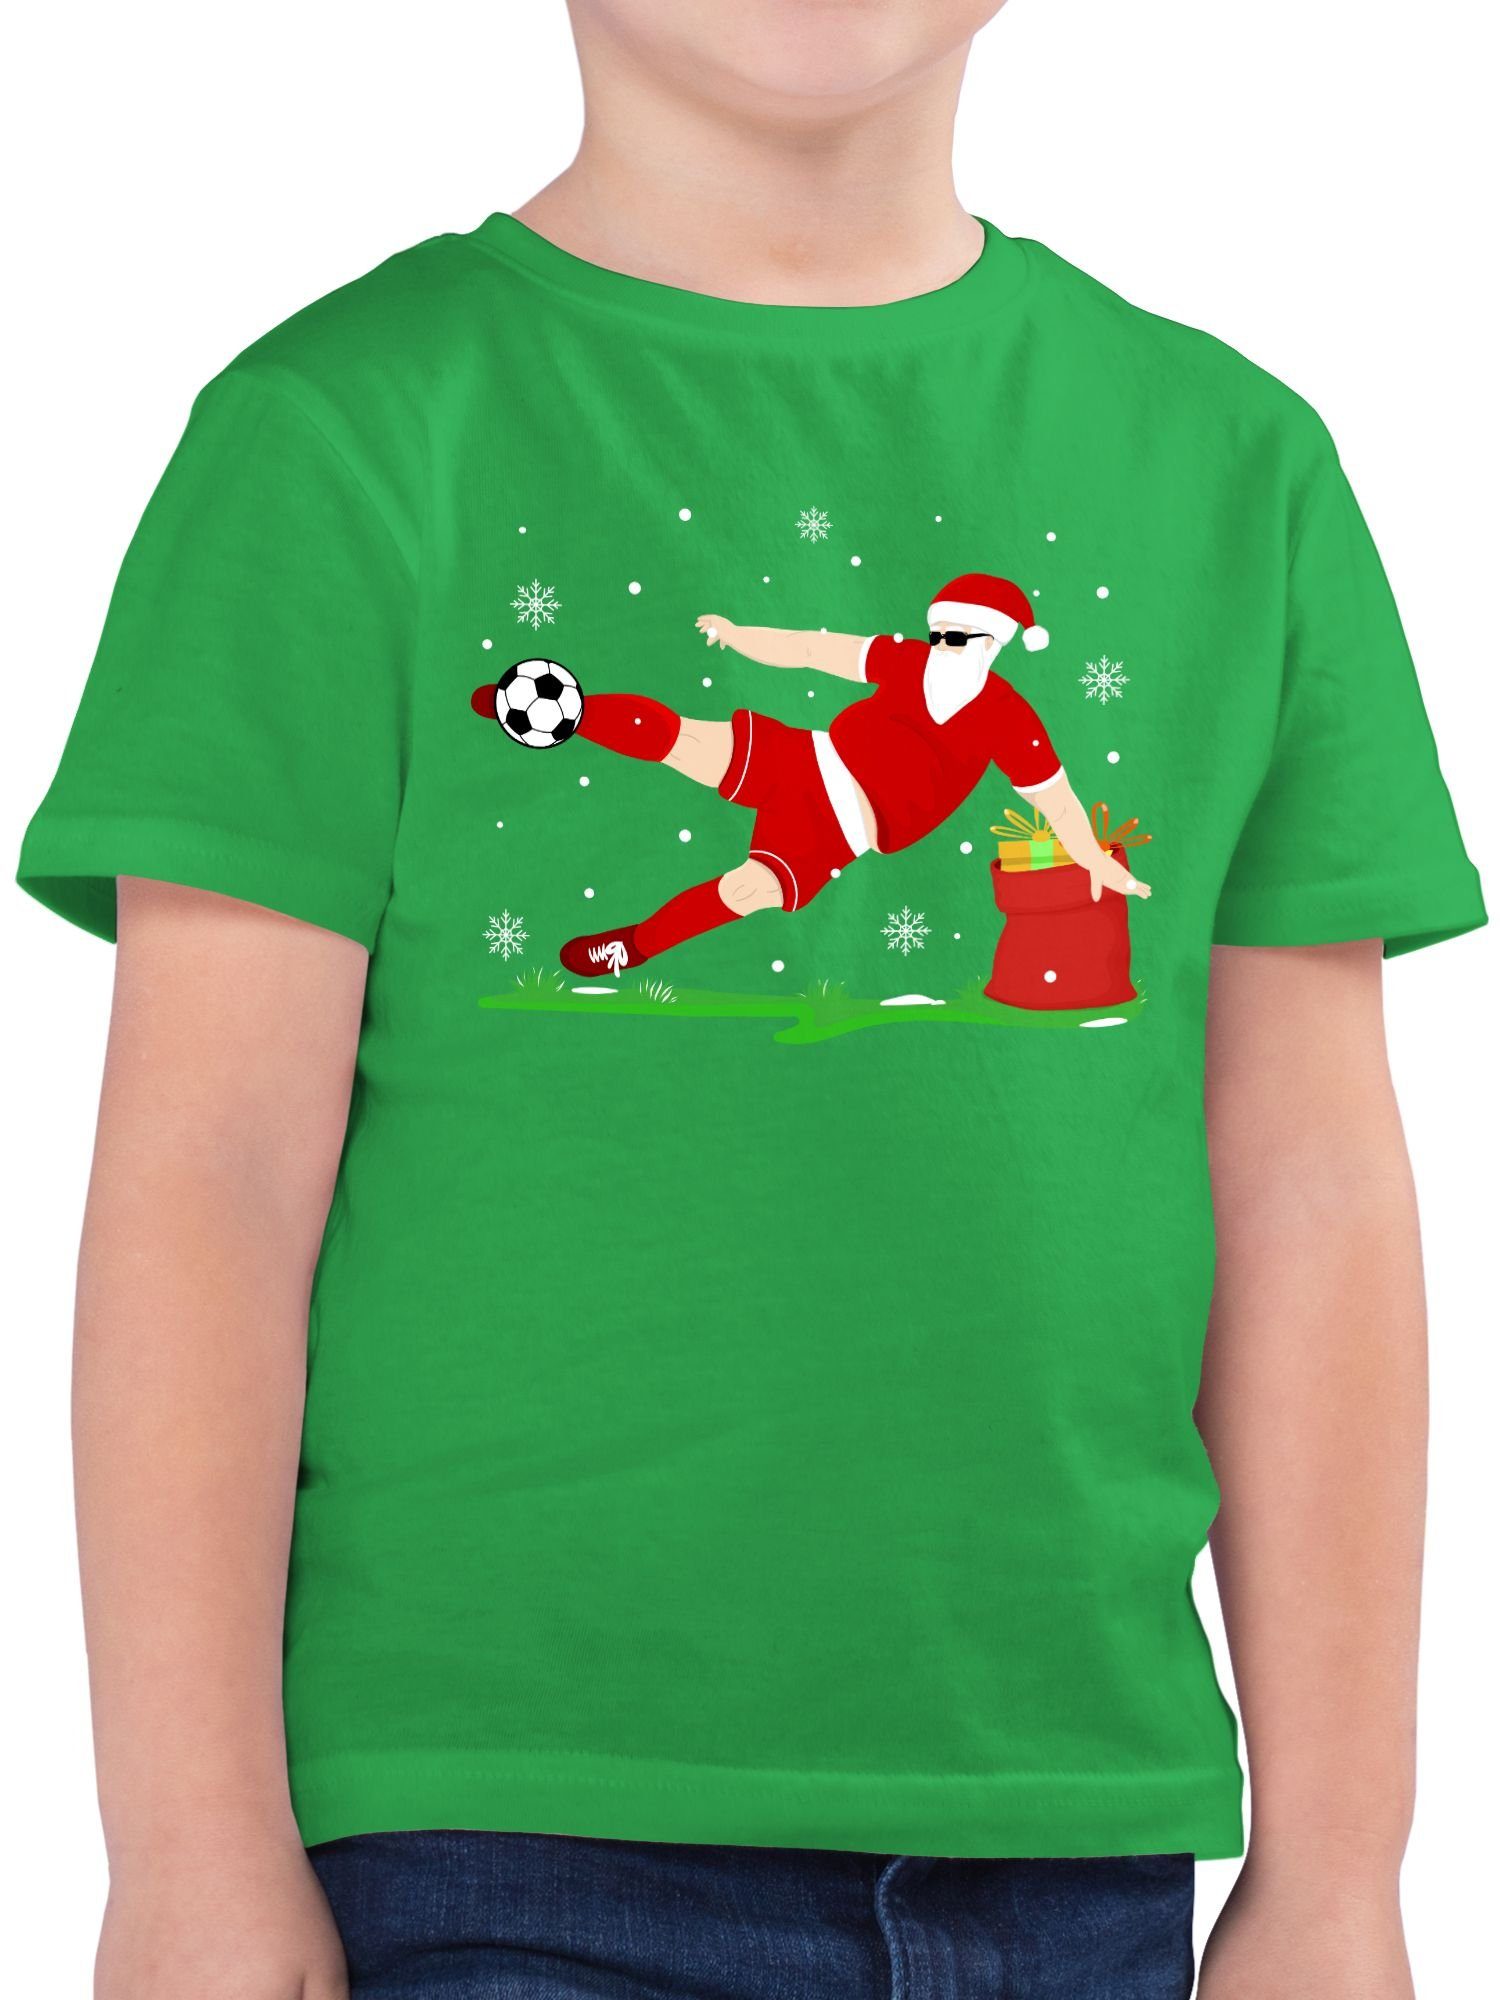 Shirtracer T-Shirt Fußball Spieler Weihnachtsmann - Weihnachten Kleidung  Kinder - Jungen Kinder T-Shirt weihnachts tshirt - weihnachtsmann fußball -  weihnachtsoutfit